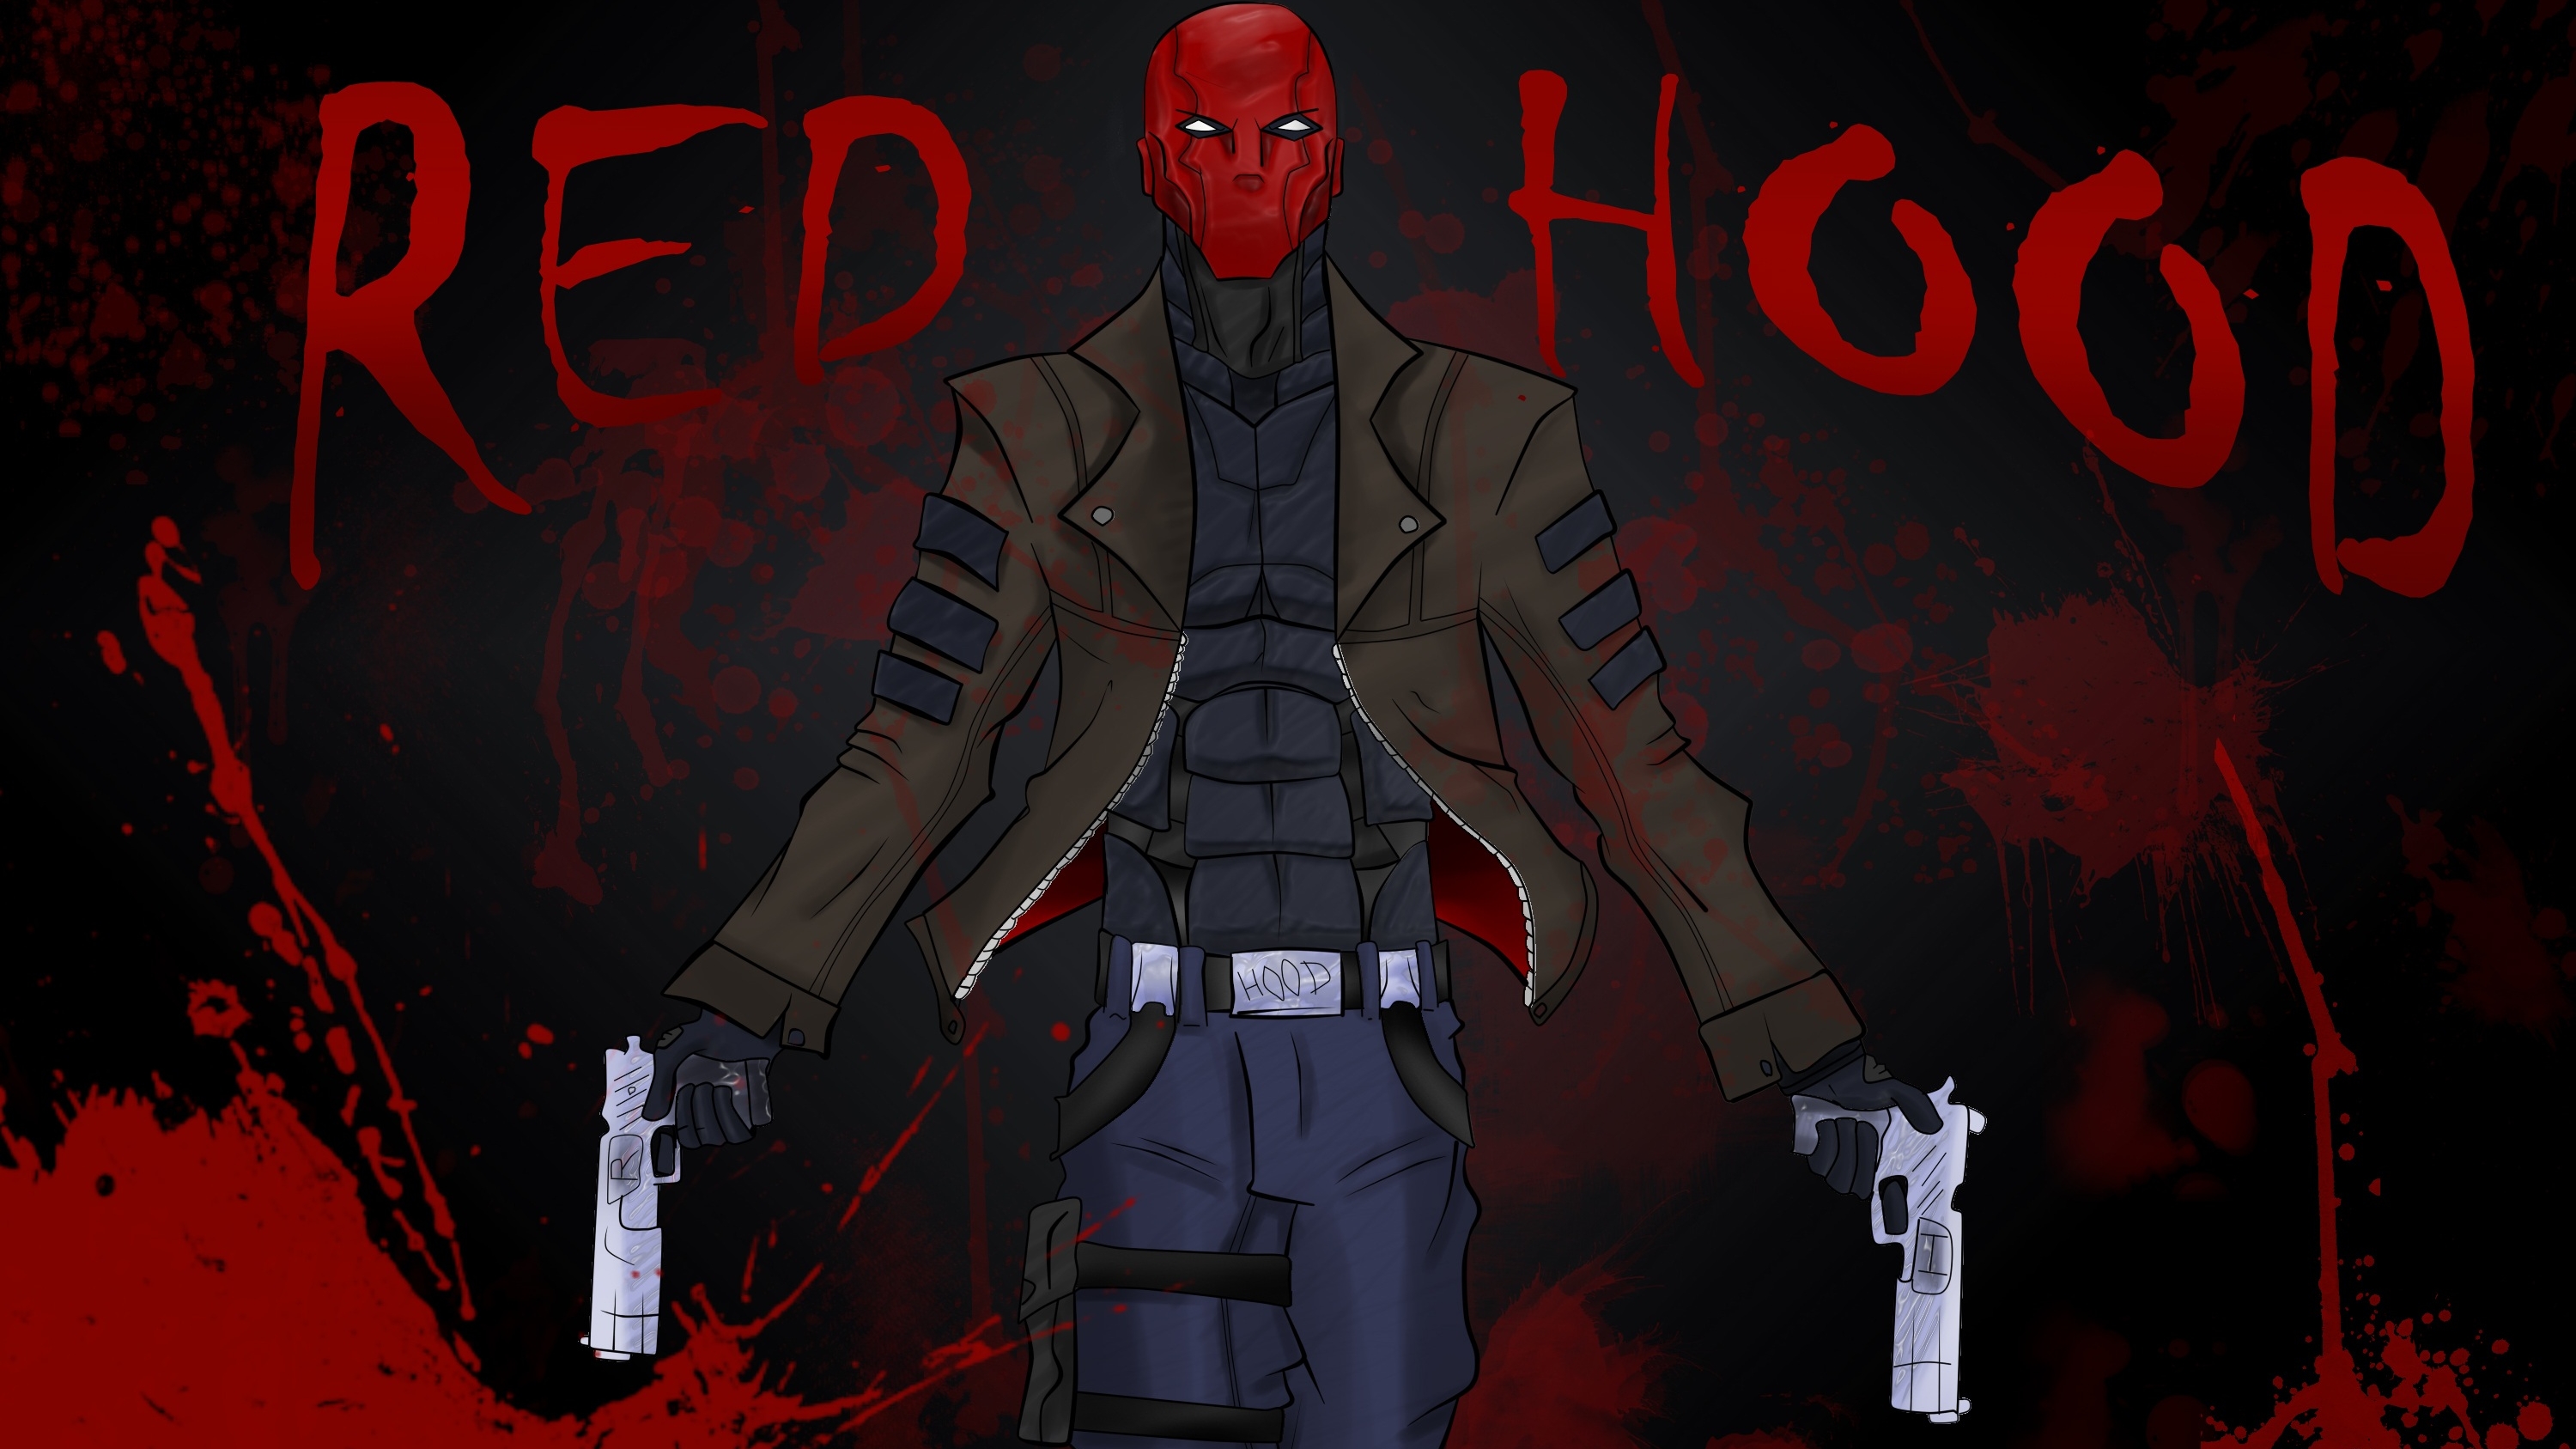 capucha roja fondo de pantalla hd,rojo,personaje de ficción,superhéroe,ilustración,arte